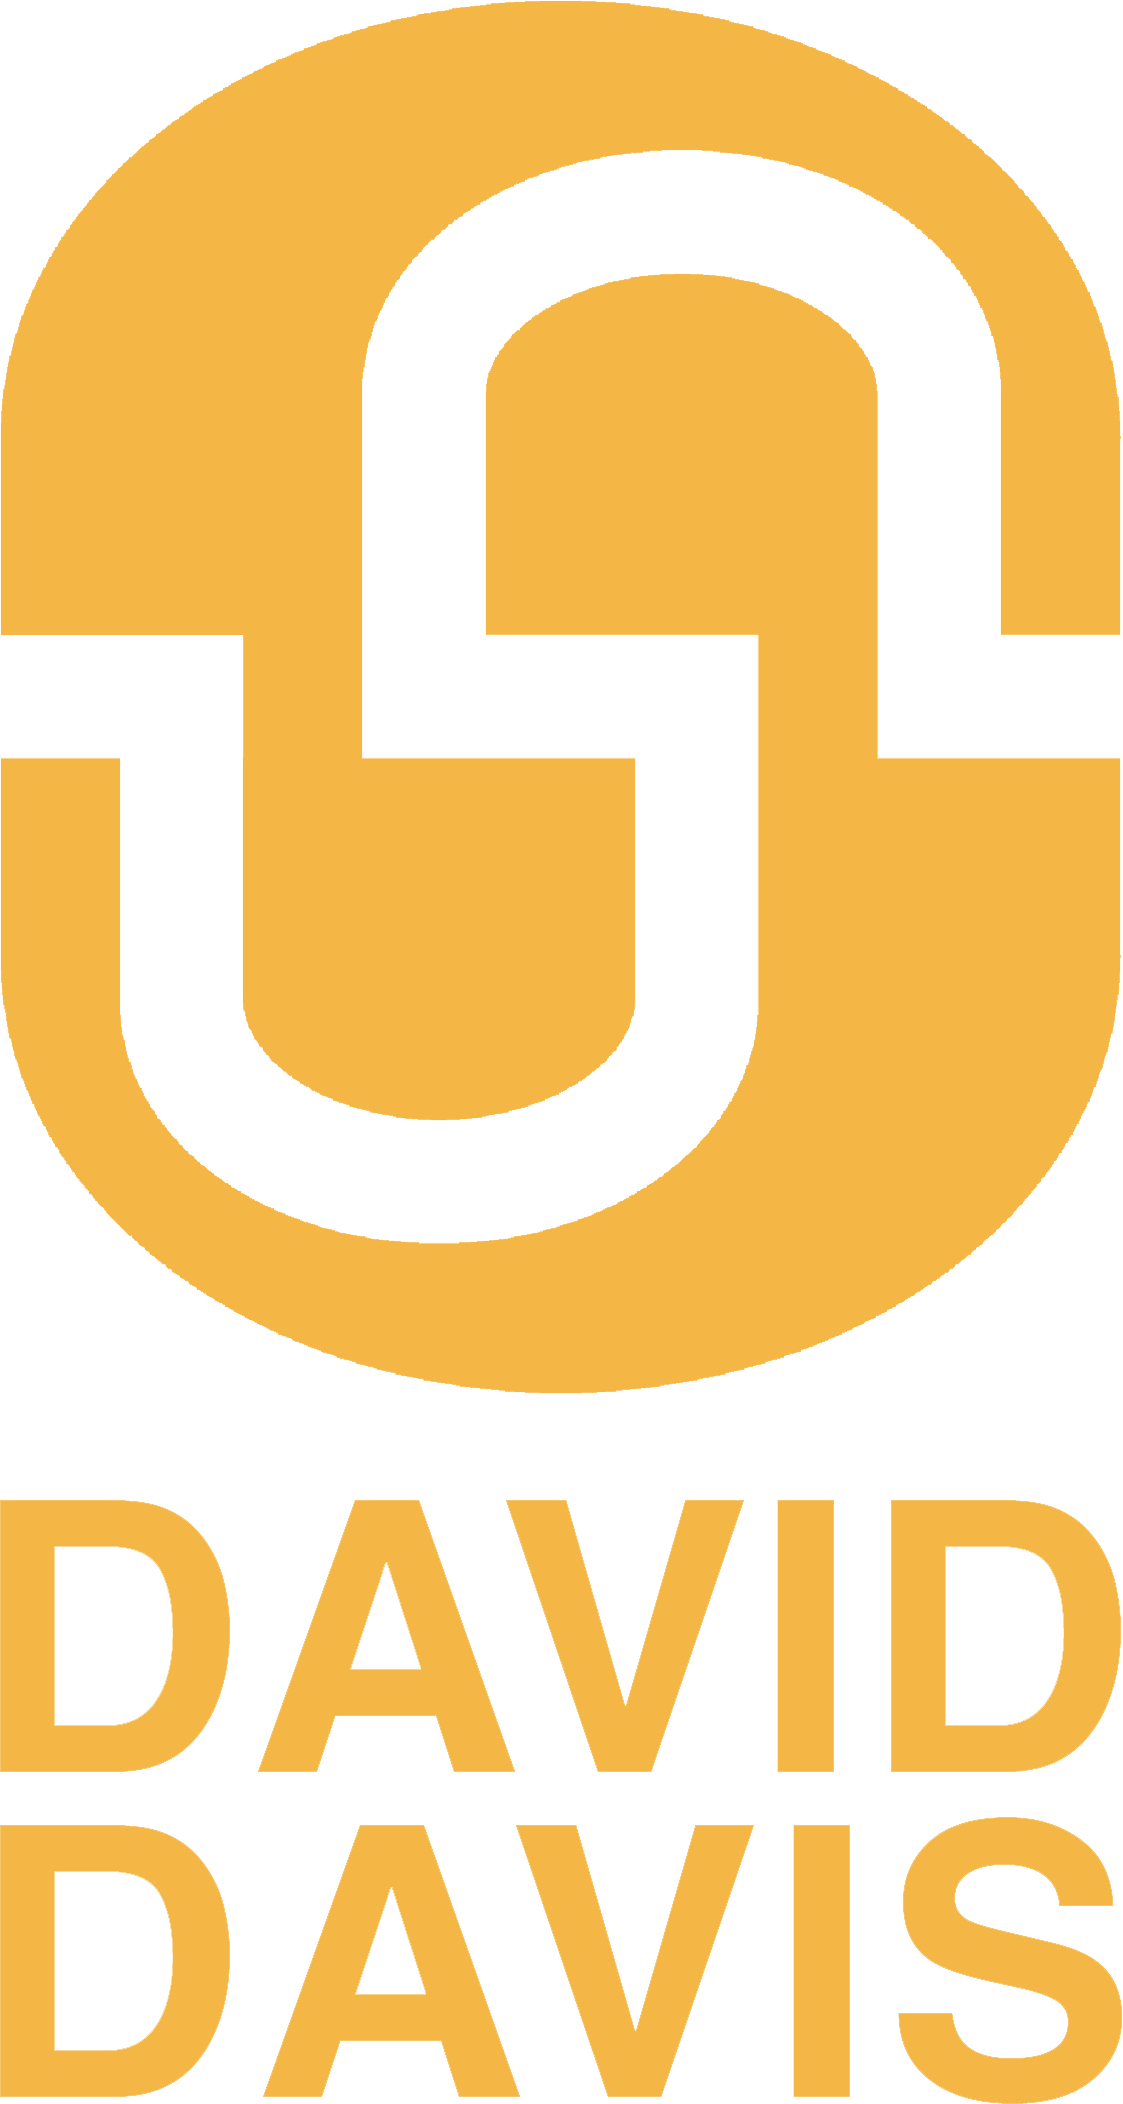 DAVID DAVIS